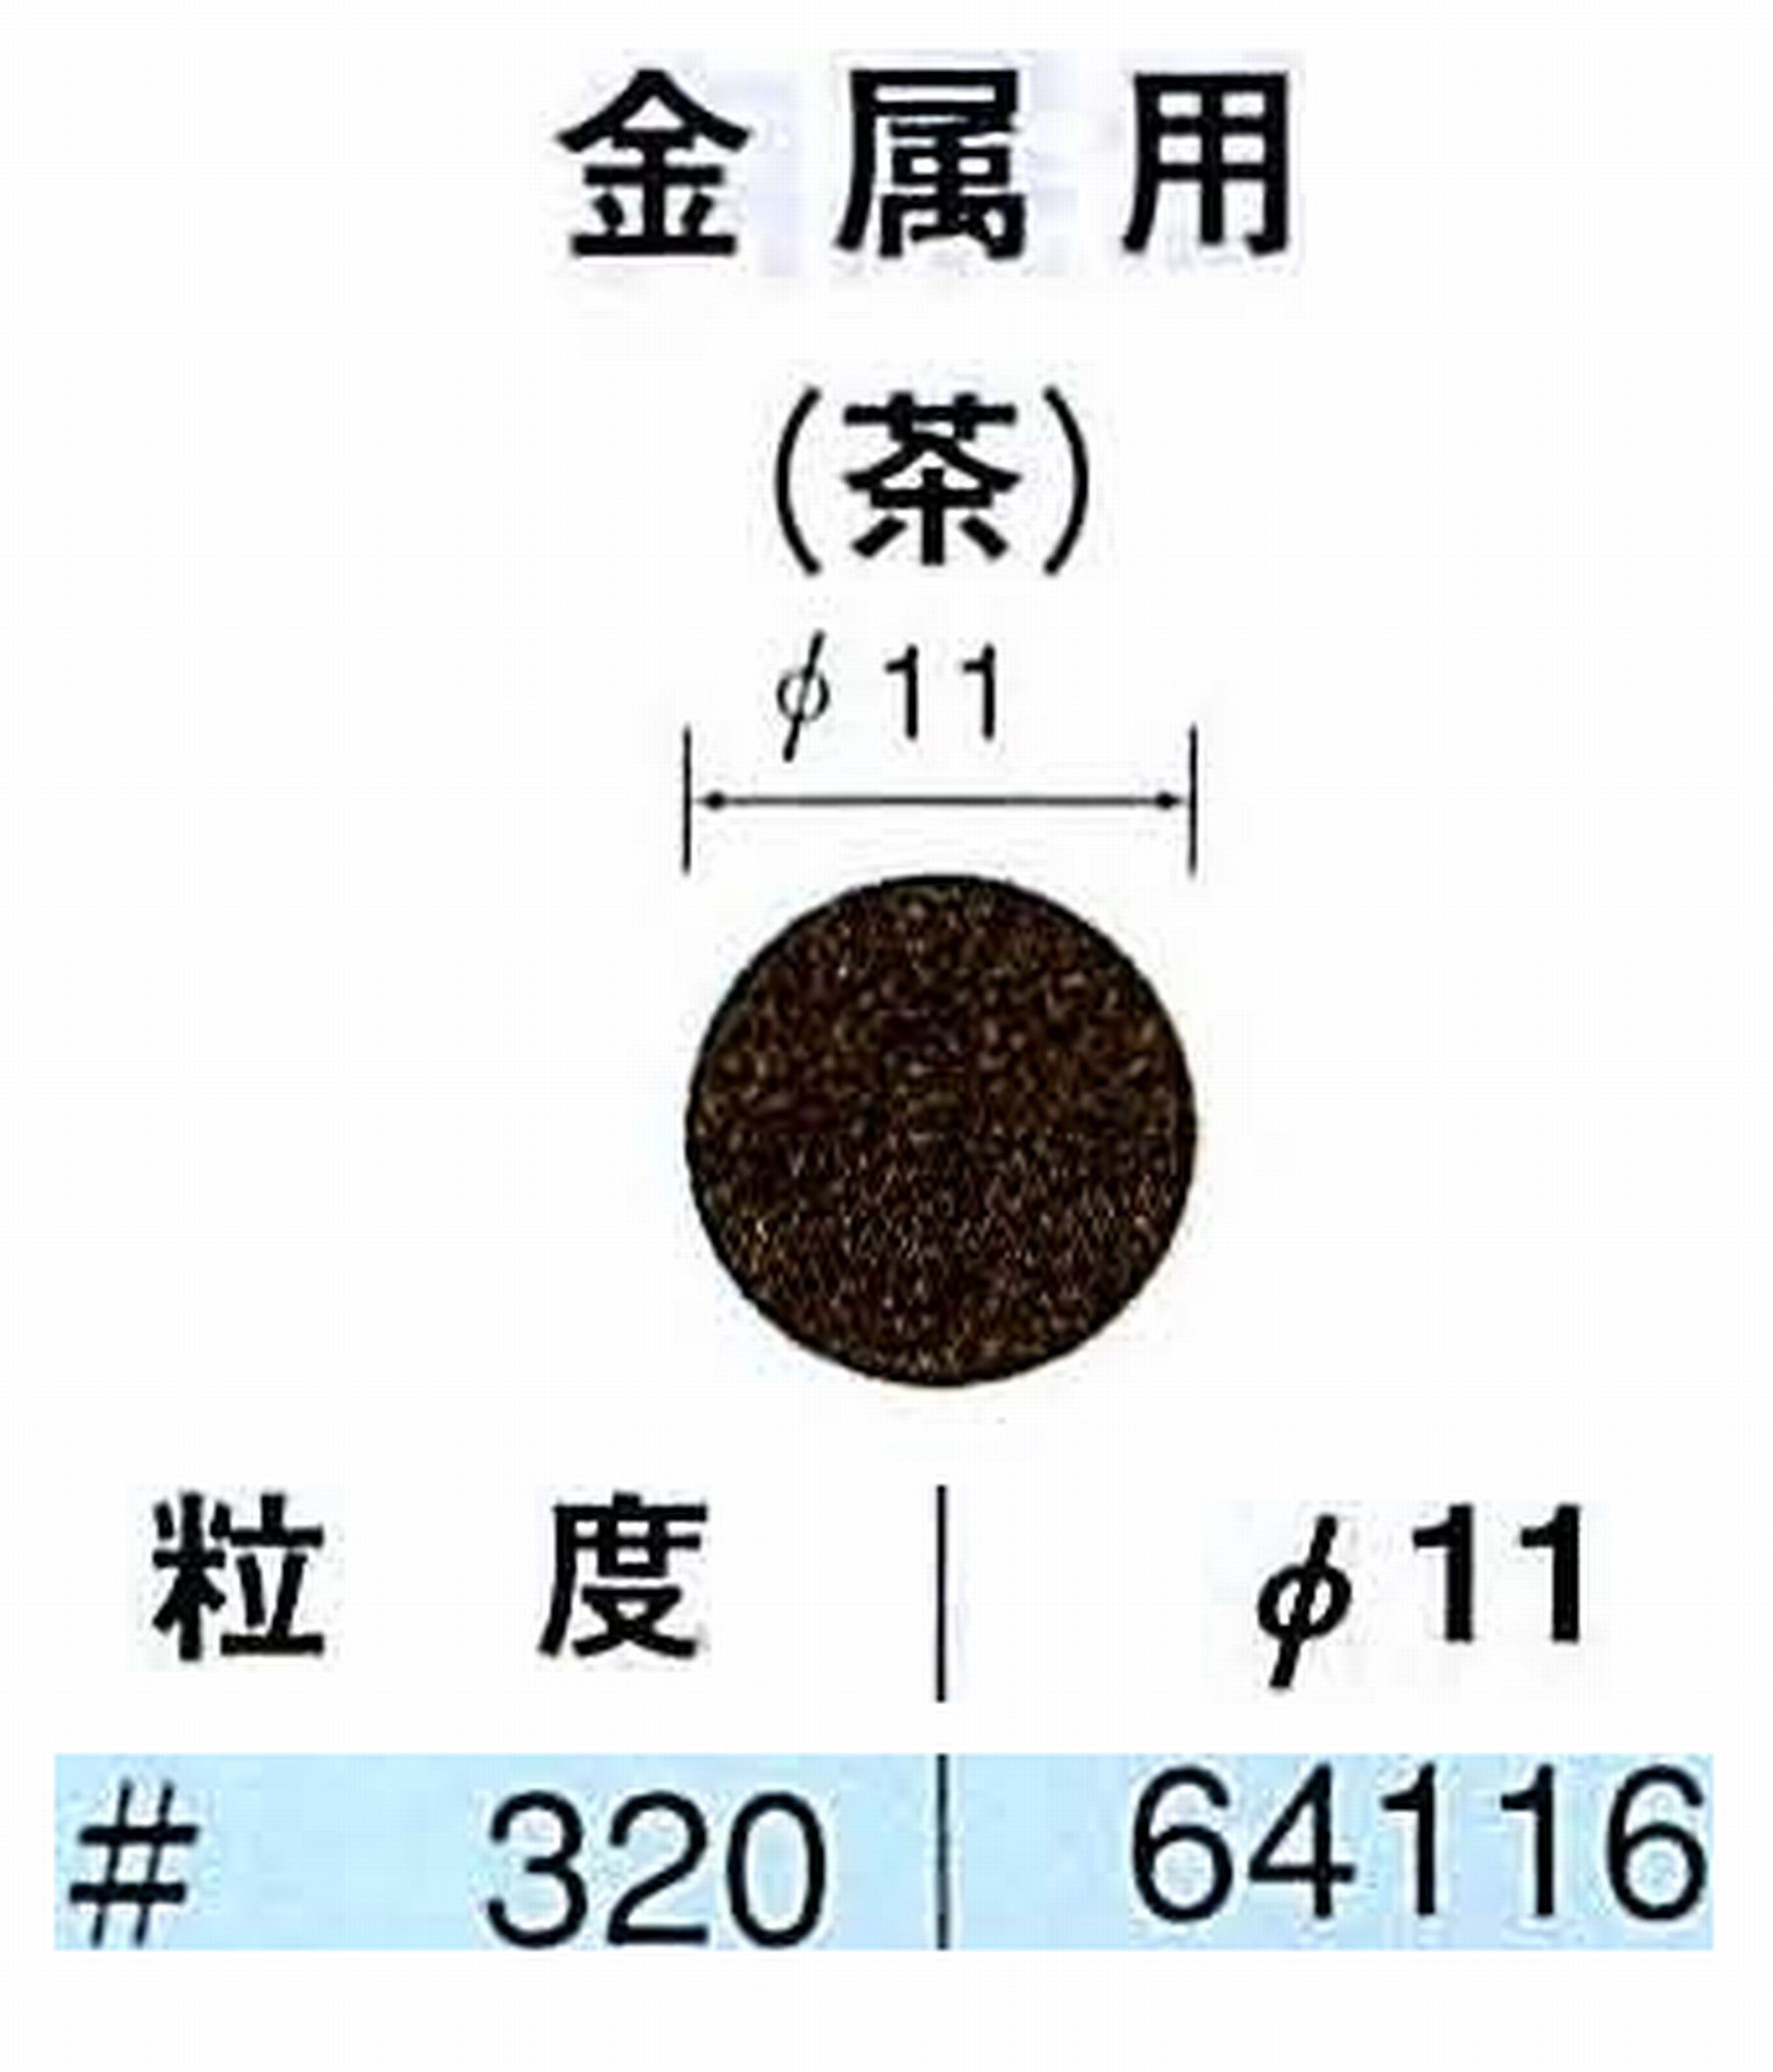 ナカニシ/NAKANISHI アングルグラインダ(電動・エアー) アングルアタッチメント専用工具 サンドペーパーディスク(布基材タイプ)裏面のり処理 64116